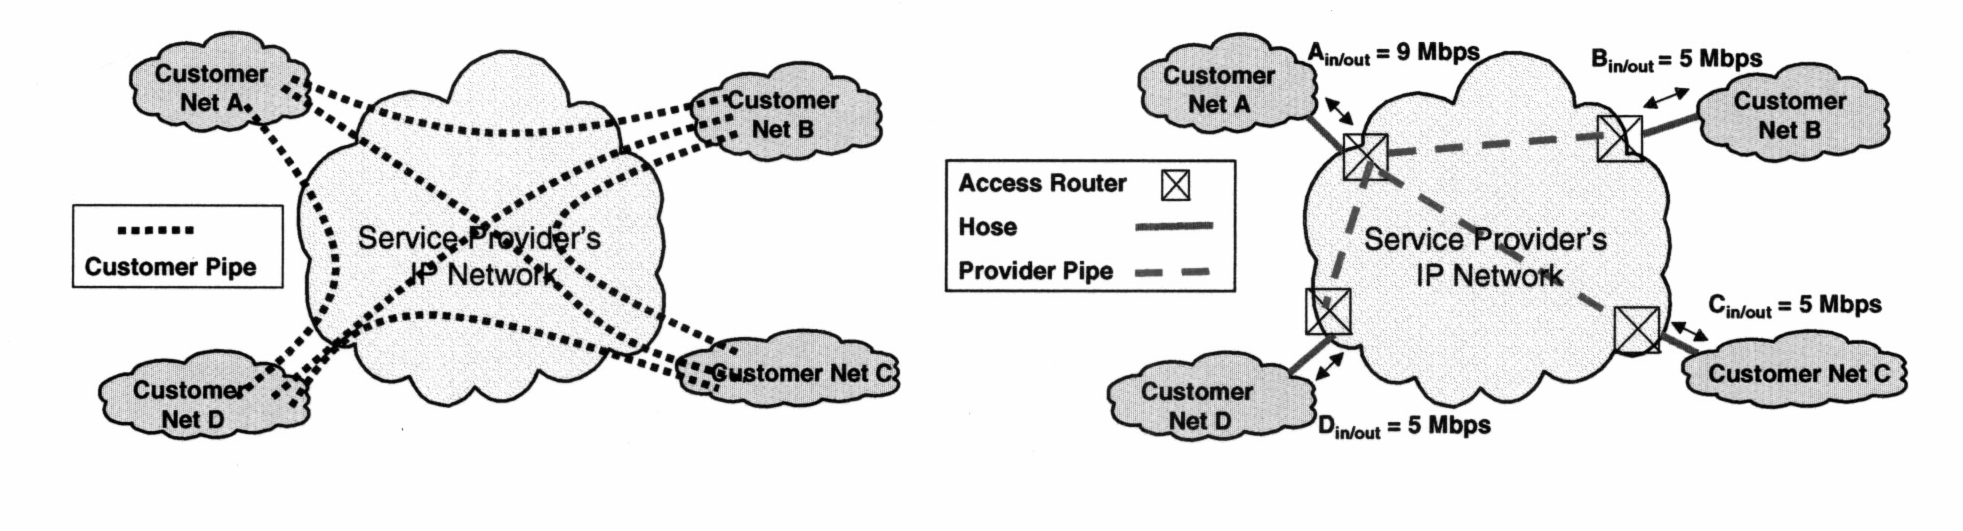 VPN forgalmi modellek VPN forgalmi modellek Pipe (csıvezeték) modell Végpont-végpont közötti forgalom nagysága egyenként Forgalmi mátrix Hose modell A felhasználó felülete (interface) a hálózat felé